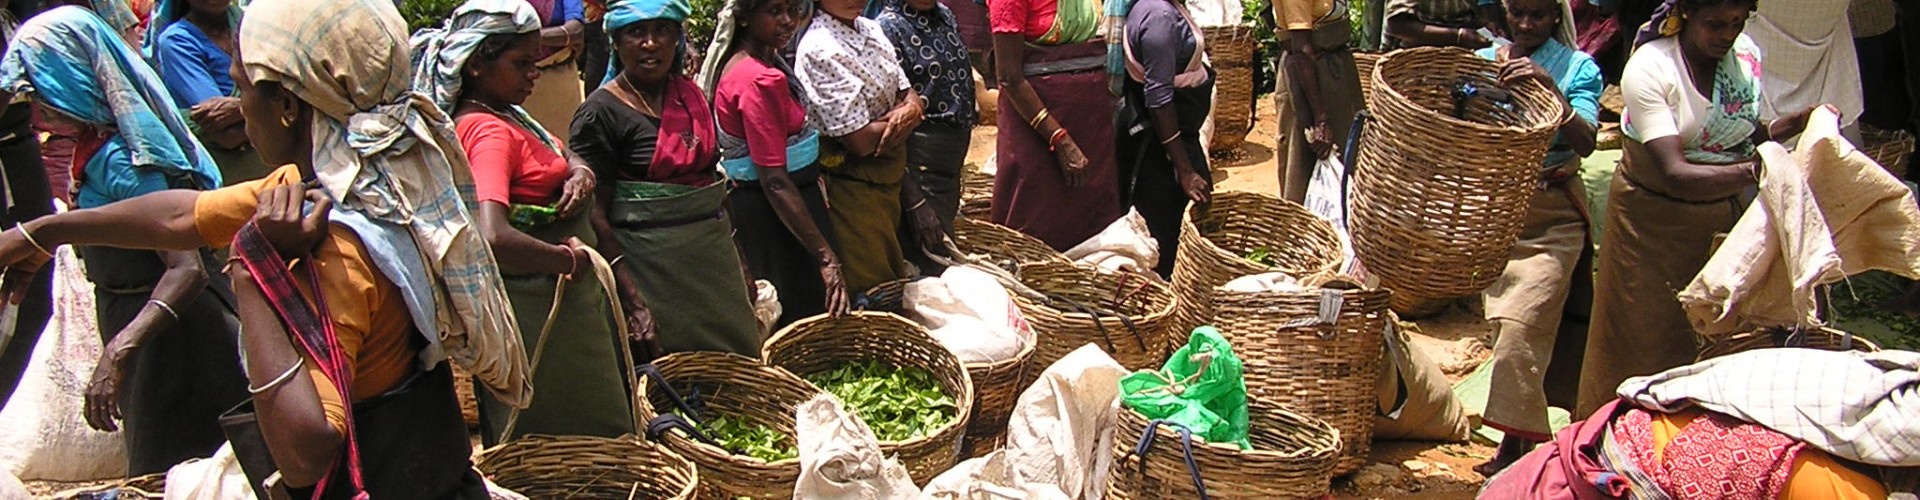 Tea pickers, Sri Lanka